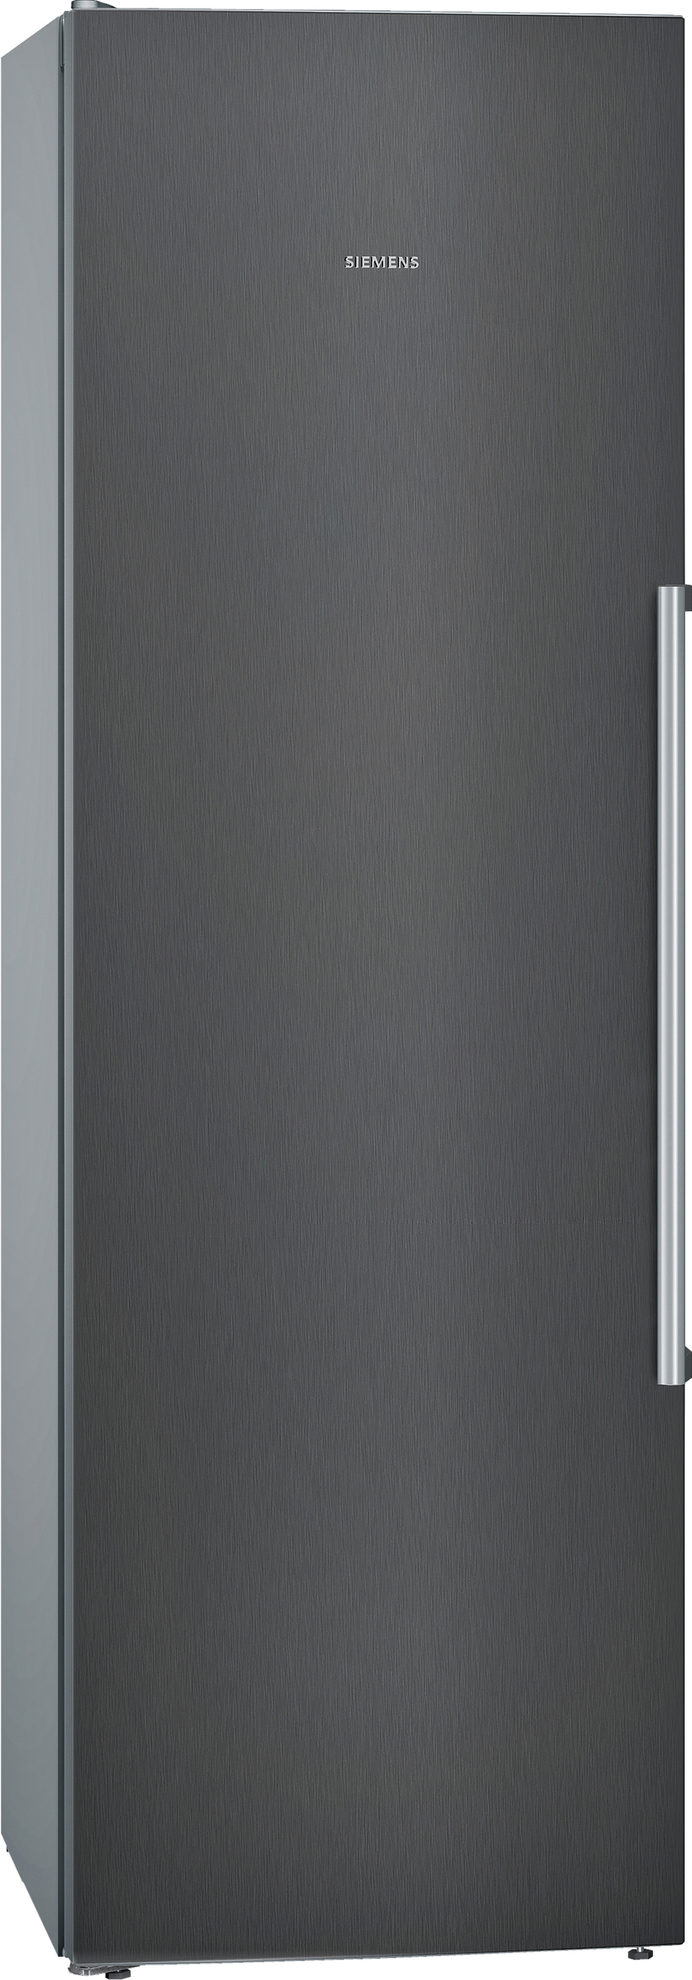 SIEMENS KS36FPXCP iQ700 Kühlschrank (C, 1860 mm hoch, blackSteel) für 899,99€ in Saturn